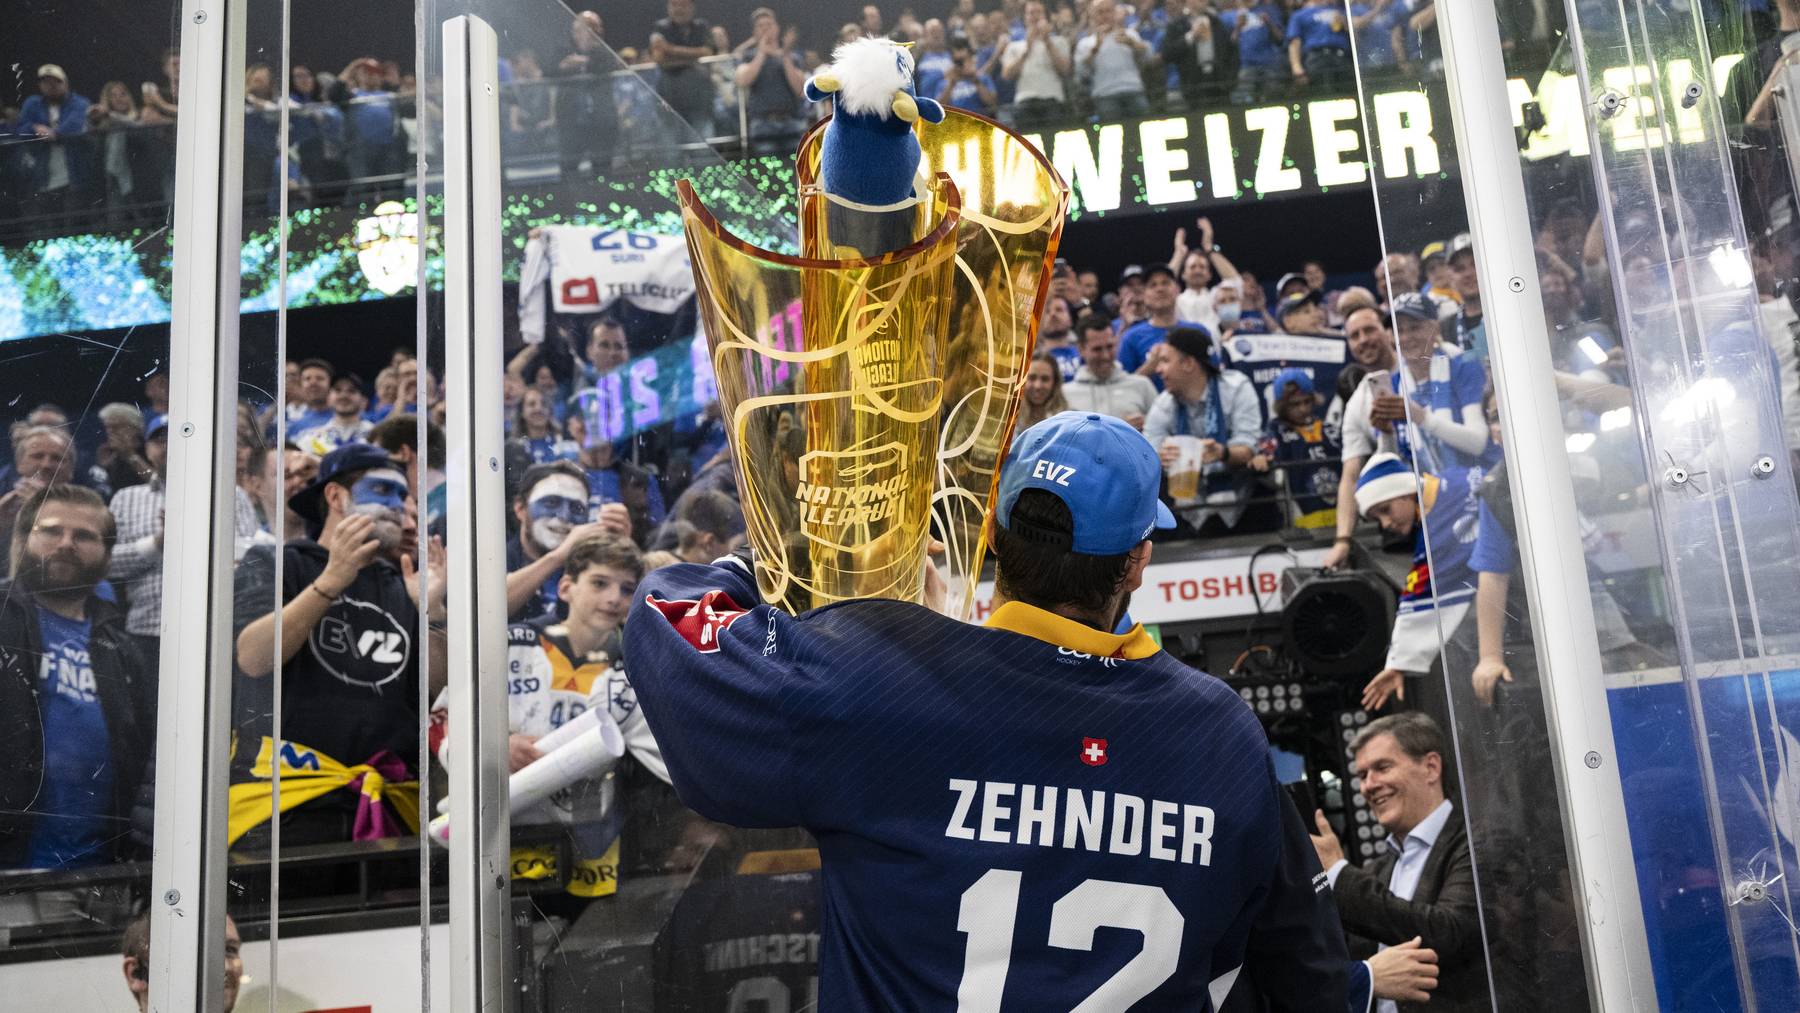 Zugs Yannick Zehnder jubelt mit dem Pokal nach ihrem Sieg im siebten Playoff-Final Eishockeyspiel der National League zwischen dem EV Zug und ZSC Lions am Sonntag, 1. Mai 2022, in der Bossard Arena in Zug.